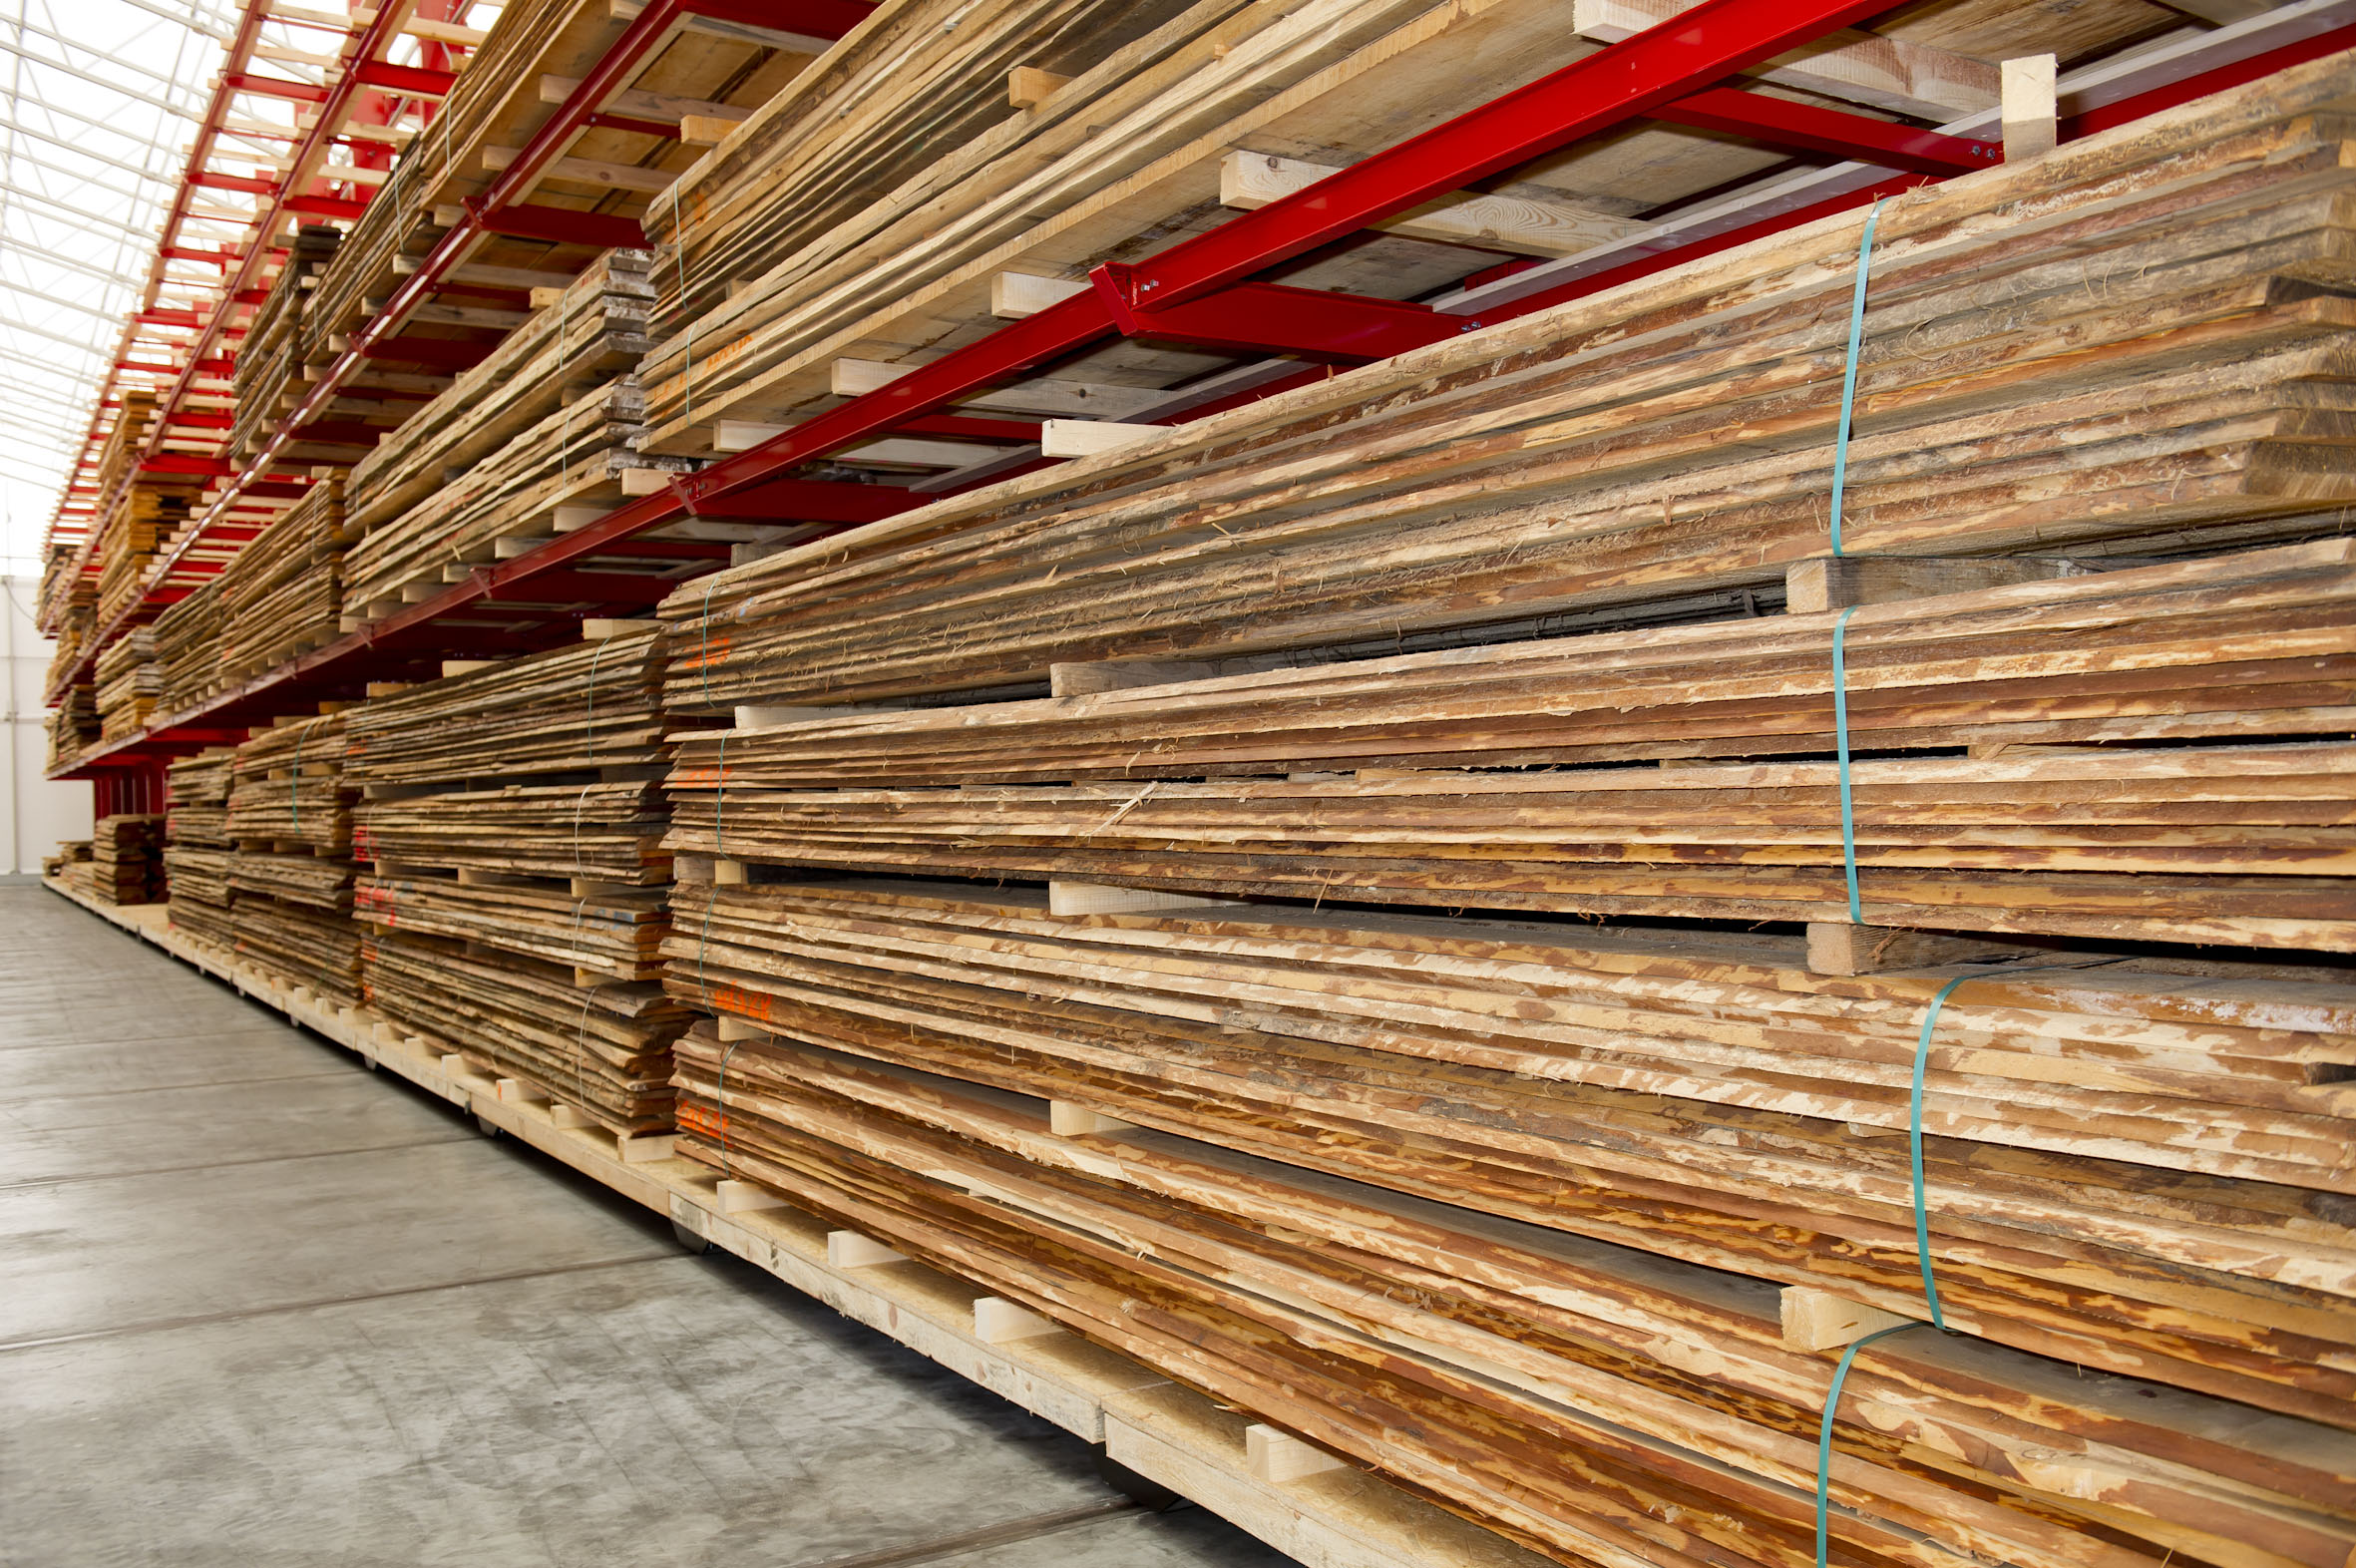 [Translate "Niederlande"] Cantilever racking timber trade